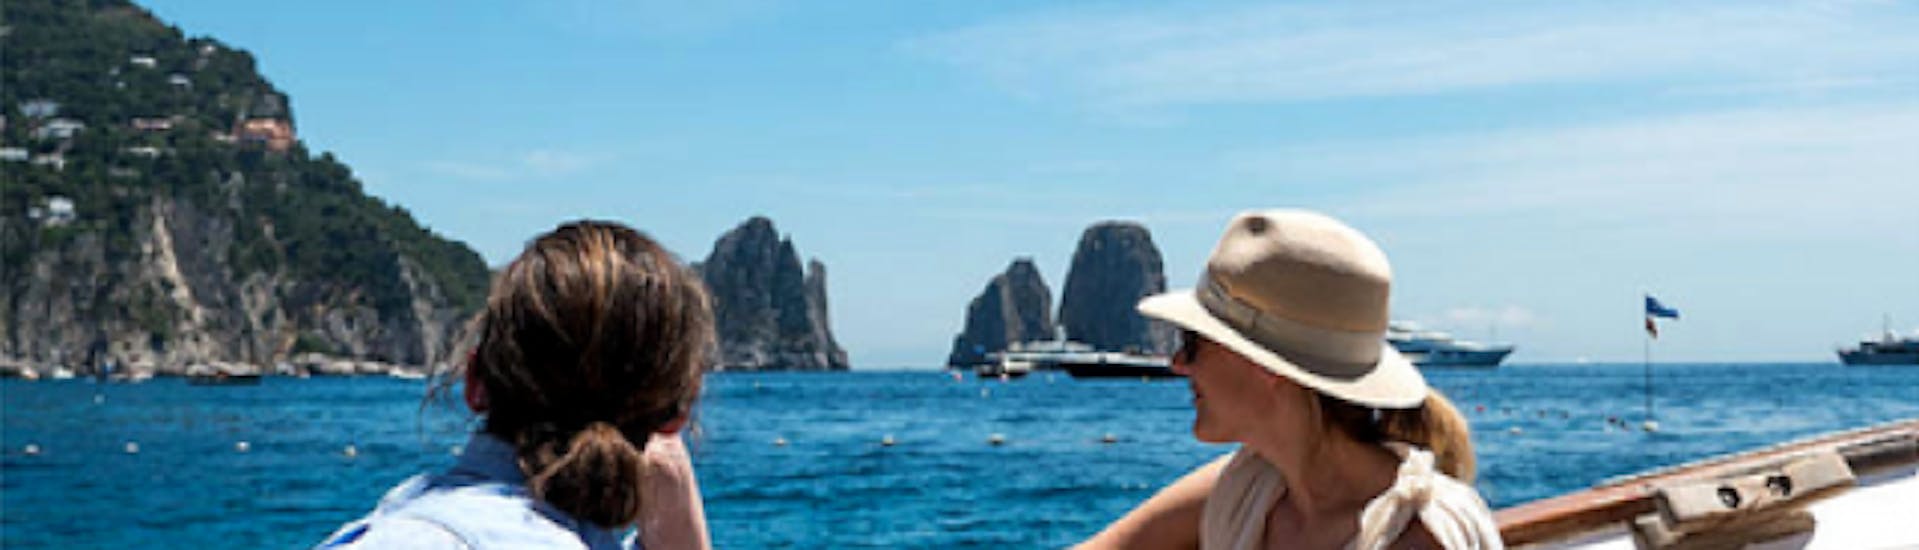 Vista de los Faraglioni durante el viaje en barco de Maiori a Capri con almuerzo con Salerno Incoming.